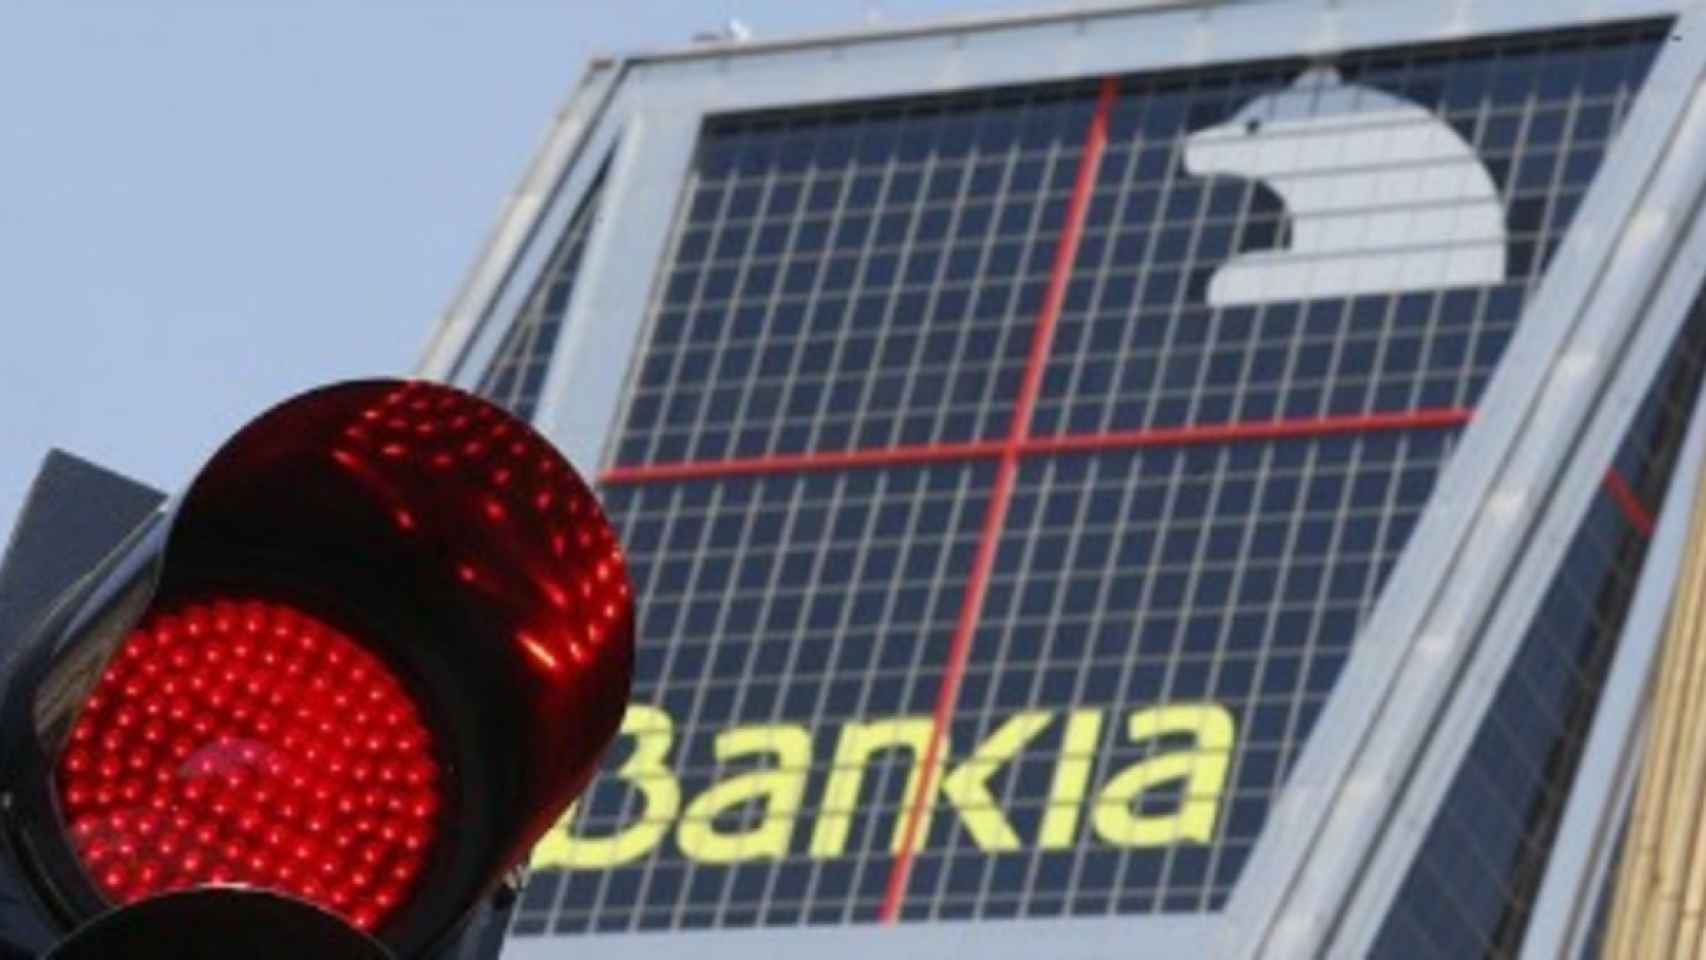 El FROB contrata a Nomura como asesor para la privatización de Bankia